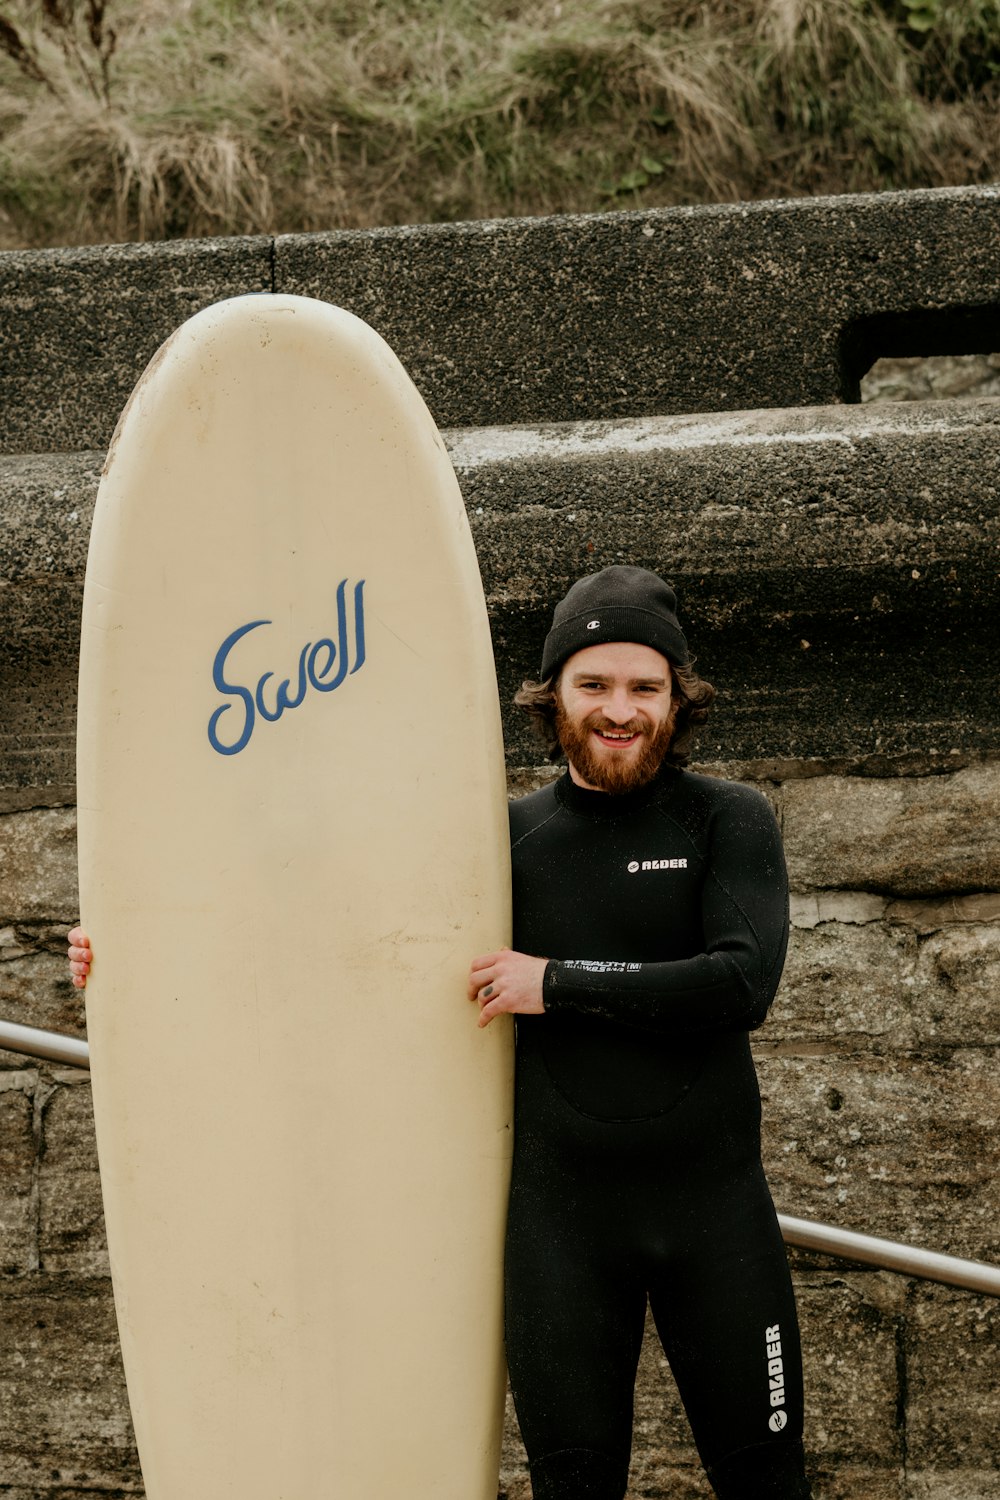 a man holding a surfboard